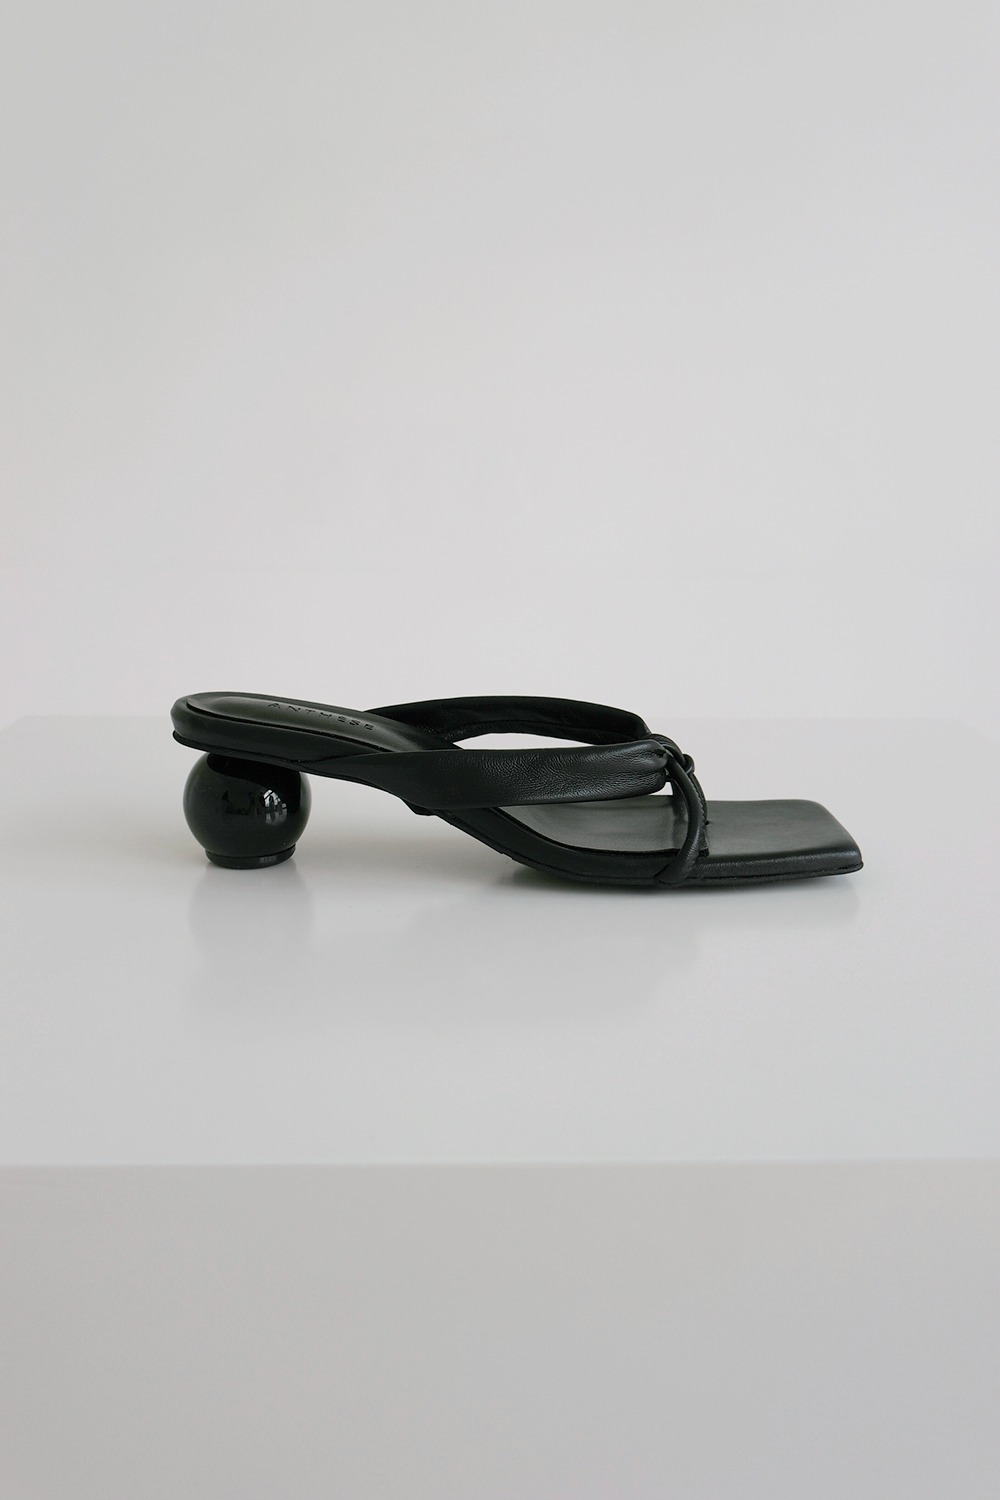 ANTHÈSE Rocher strap sandal, black (10%)